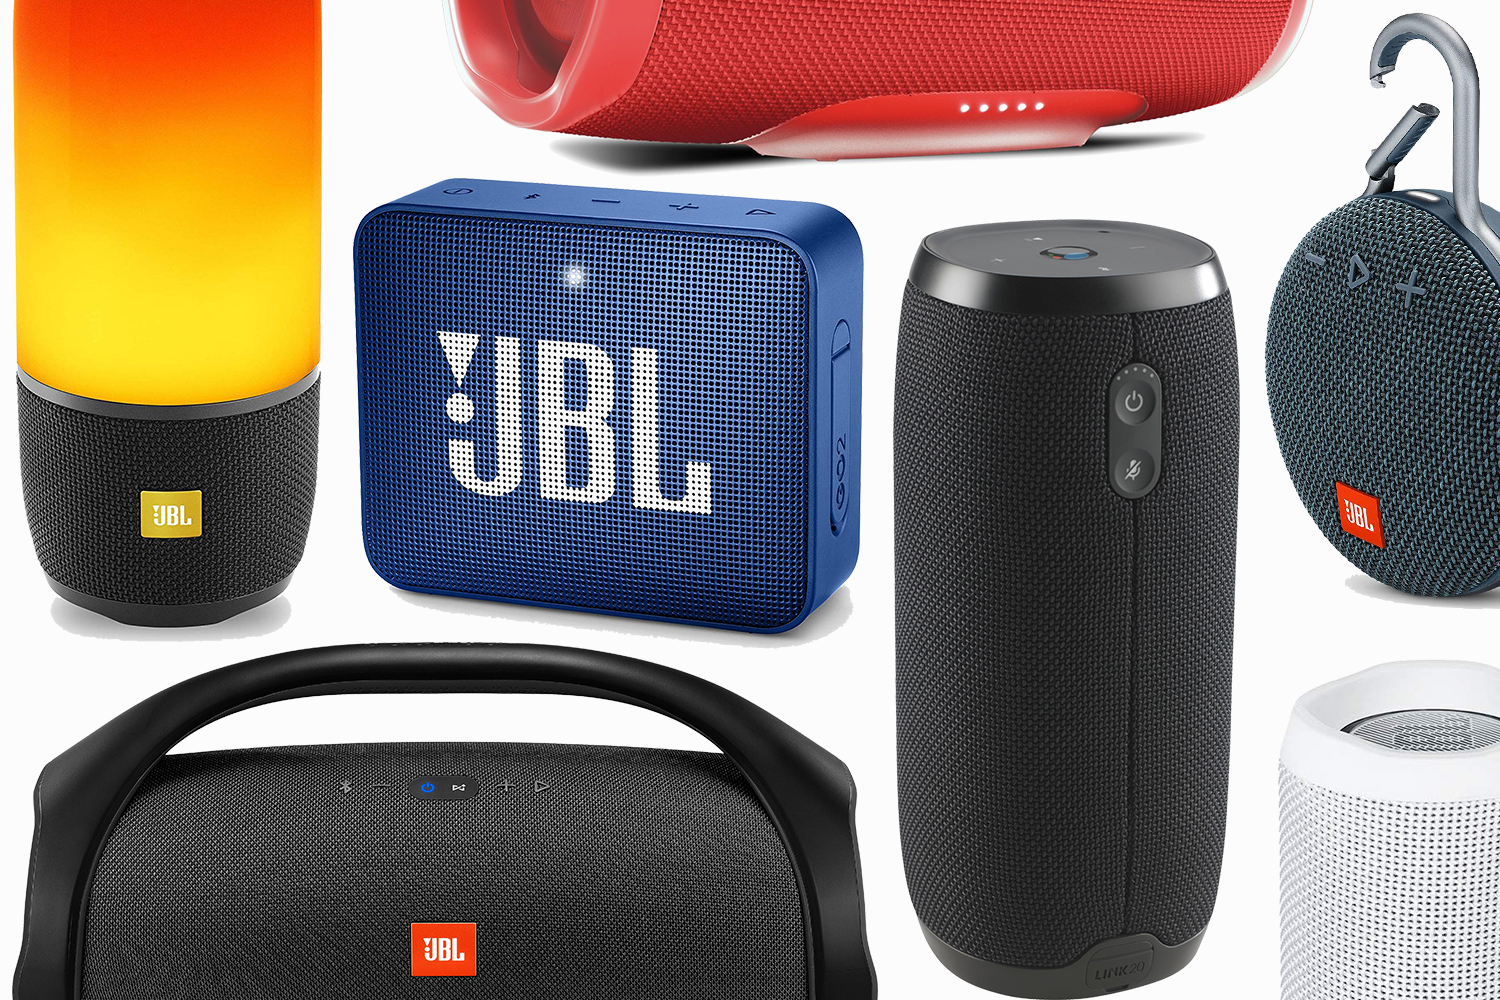 Udvalg krybdyr Lægge sammen Basically Any Portable Speaker You Could Want Is on Sale at JBL - InsideHook